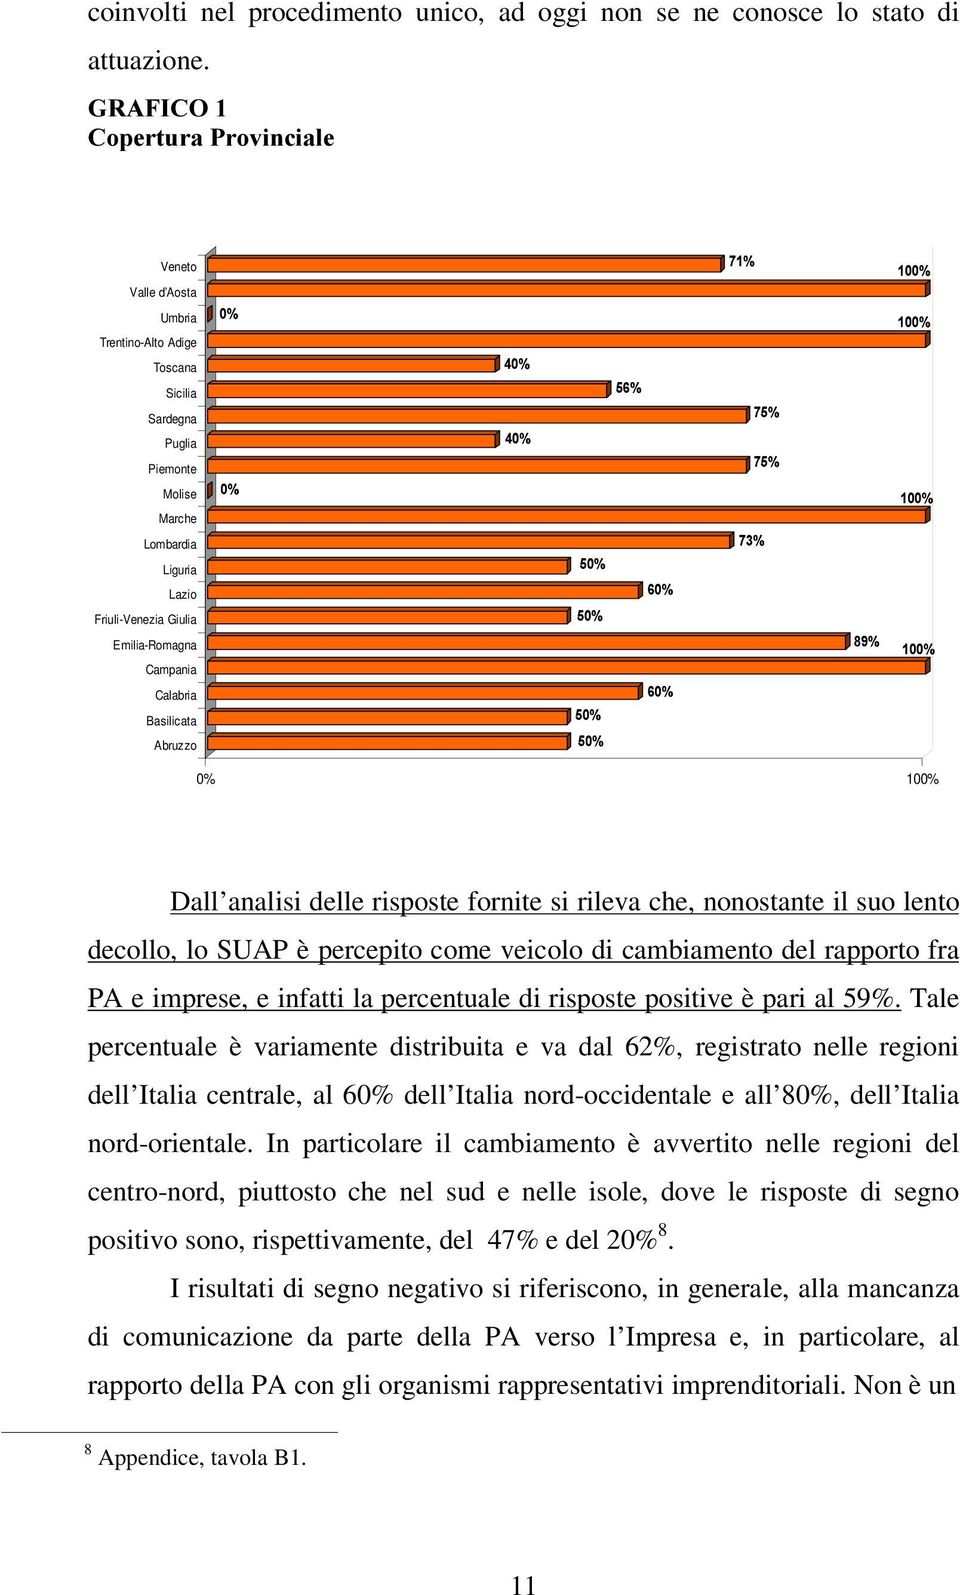 Campania Calabria Basilicata Abruzzo 0% 100% Dall analisi delle risposte fornite si rileva che, nonostante il suo lento decollo, lo SUAP è percepito come veicolo di cambiamento del rapporto fra PA e